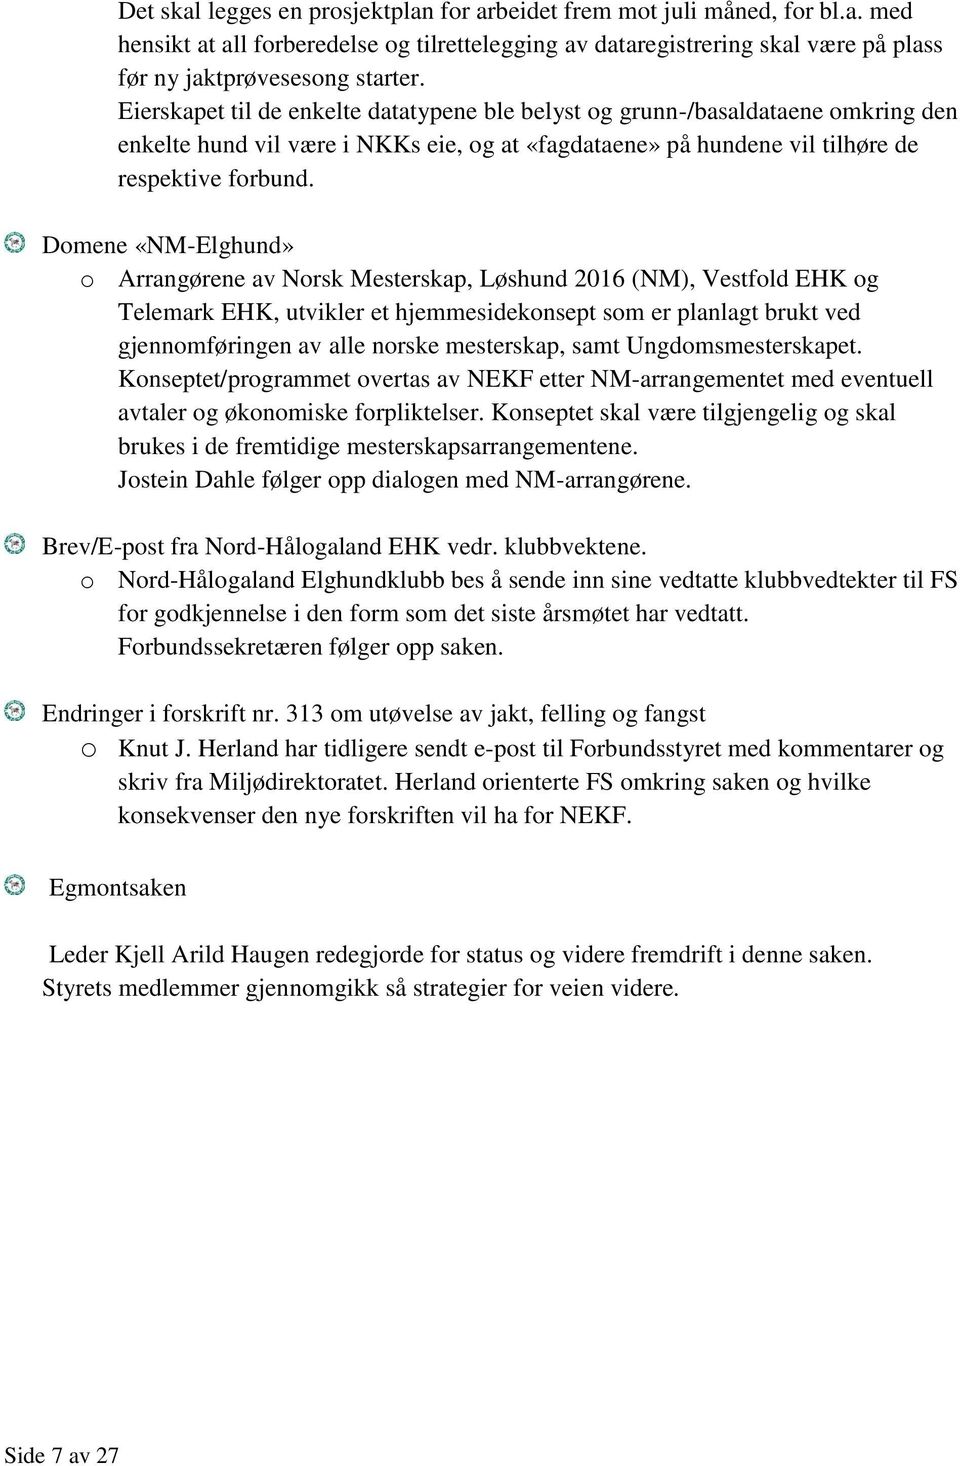 Domene «NM-Elghund» o Arrangørene av Norsk Mesterskap, Løshund 2016 (NM), Vestfold EHK og Telemark EHK, utvikler et hjemmesidekonsept som er planlagt brukt ved gjennomføringen av alle norske